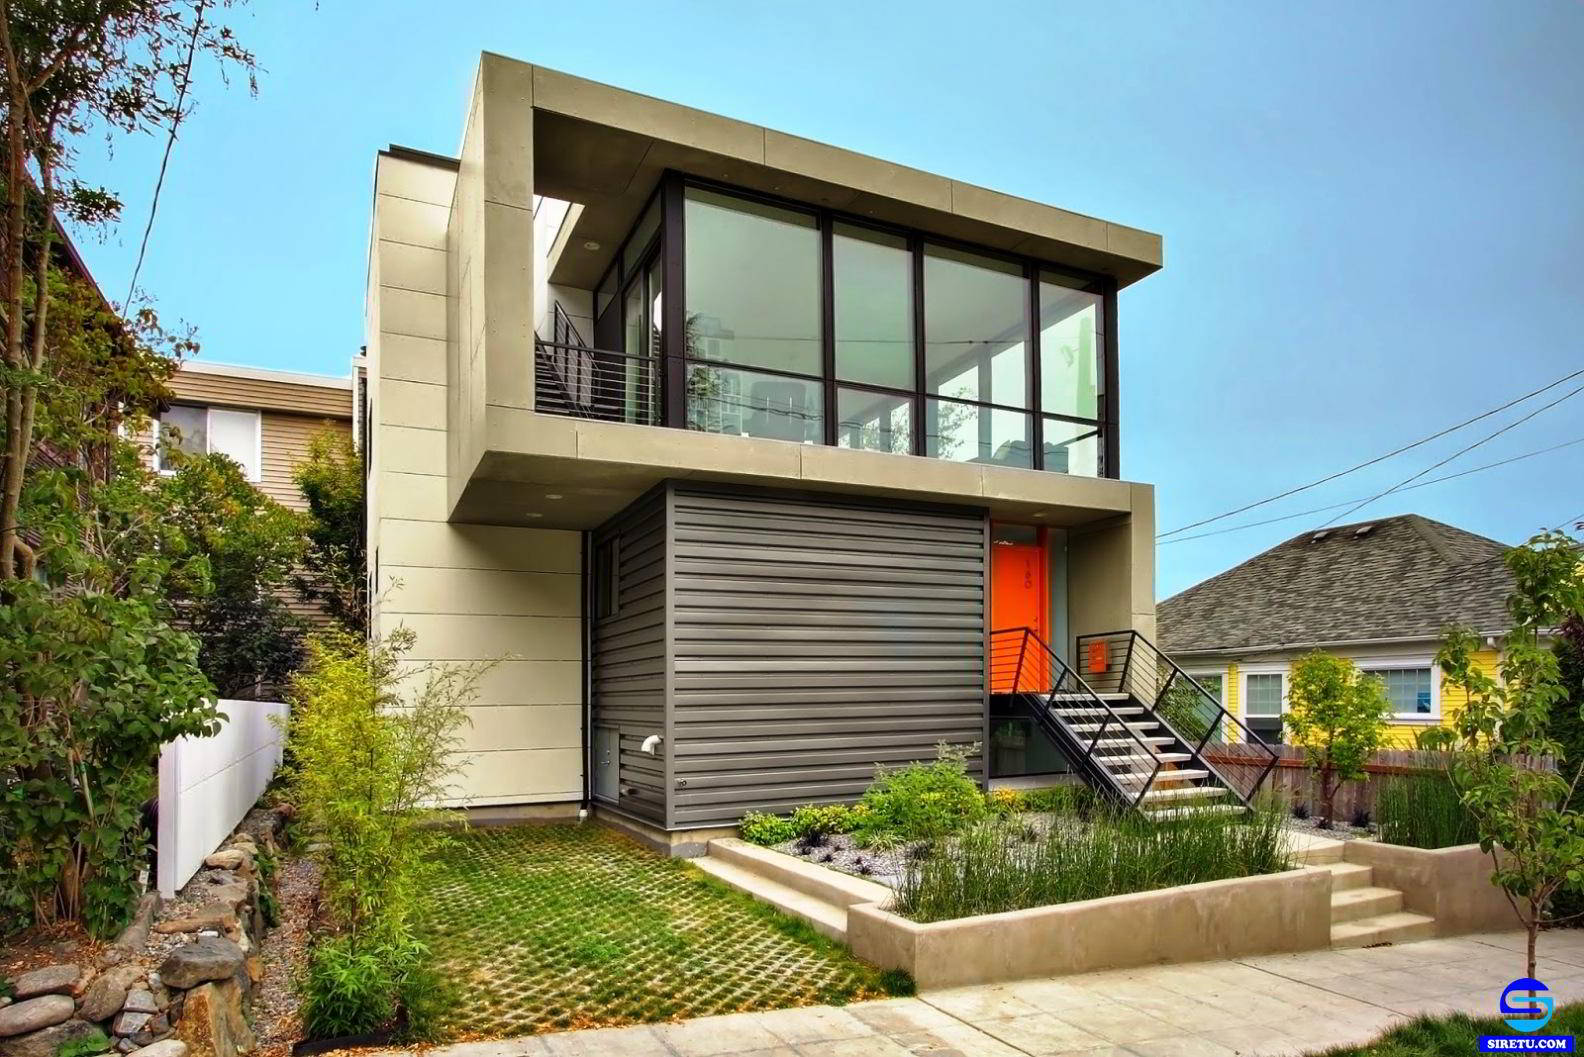  20 desain  rumah  kaca  minimalis  modern 2 lantai sederhana 